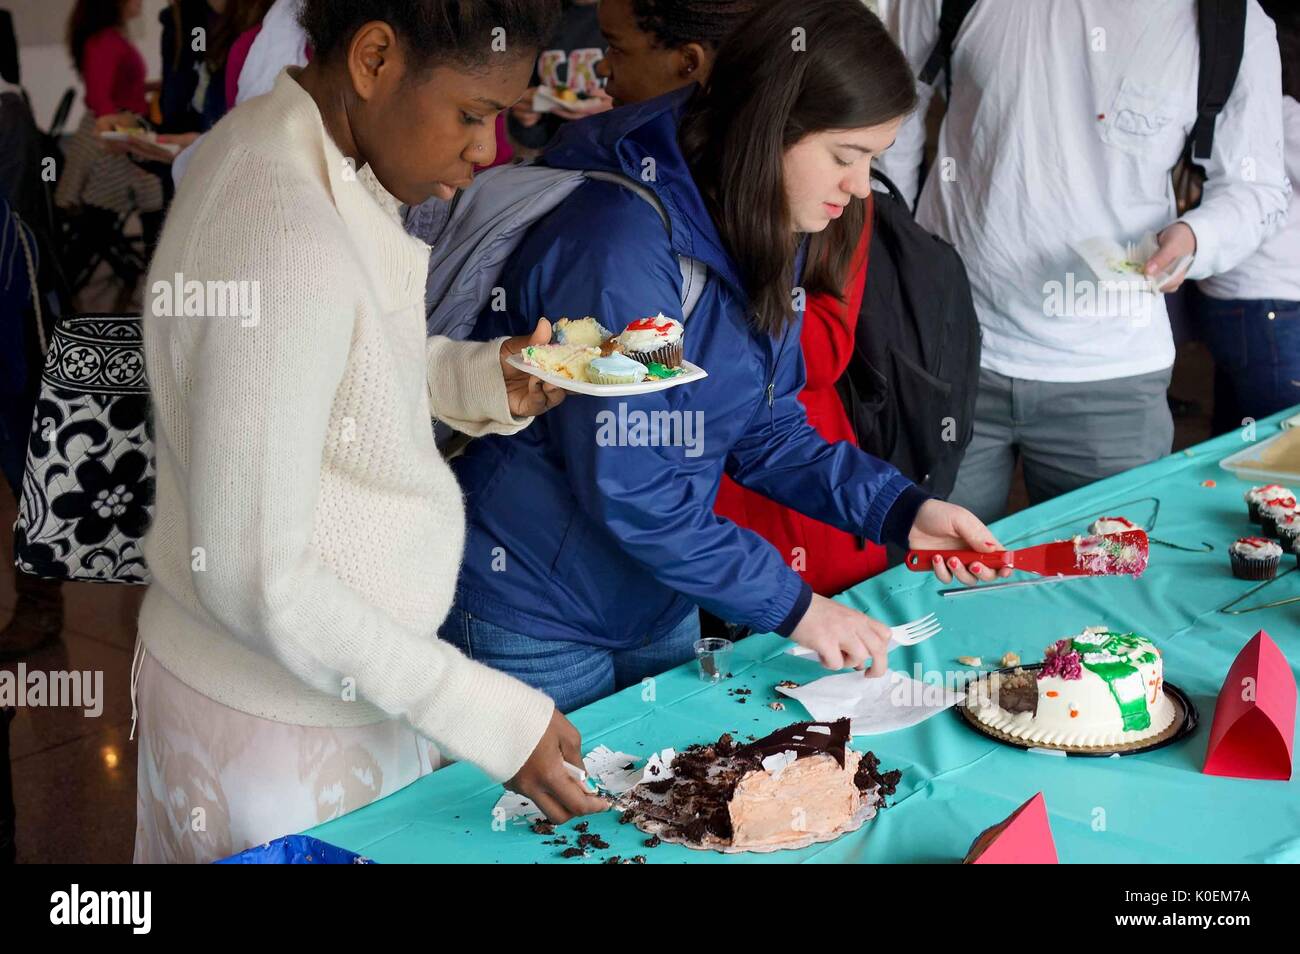 Les étudiants du Collège ont coupé et mangé du gâteau au Festival du livre comestible 2014, un concours de gâteau littéraire sur le campus Homewood de l'Université Johns Hopkins à Baltimore, Maryland, 2014. Avec la permission d'Eric Chen. Banque D'Images